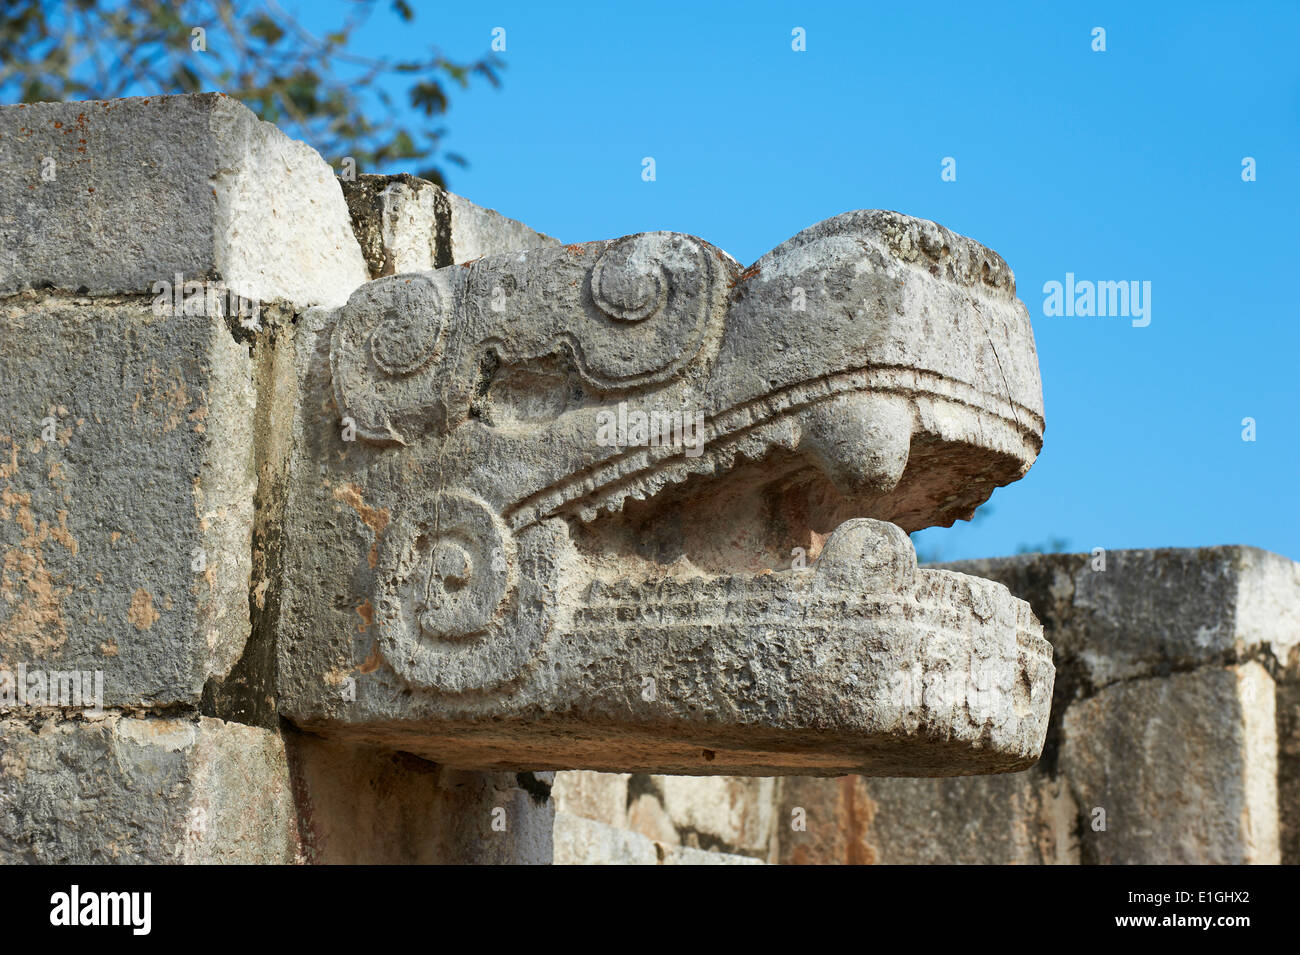 Le Mexique, l'état du Yucatan, Chichen Itza, site archéologique classé au patrimoine mondial de l'UNESCO, la tête de serpent, d'anciennes ruines maya Banque D'Images